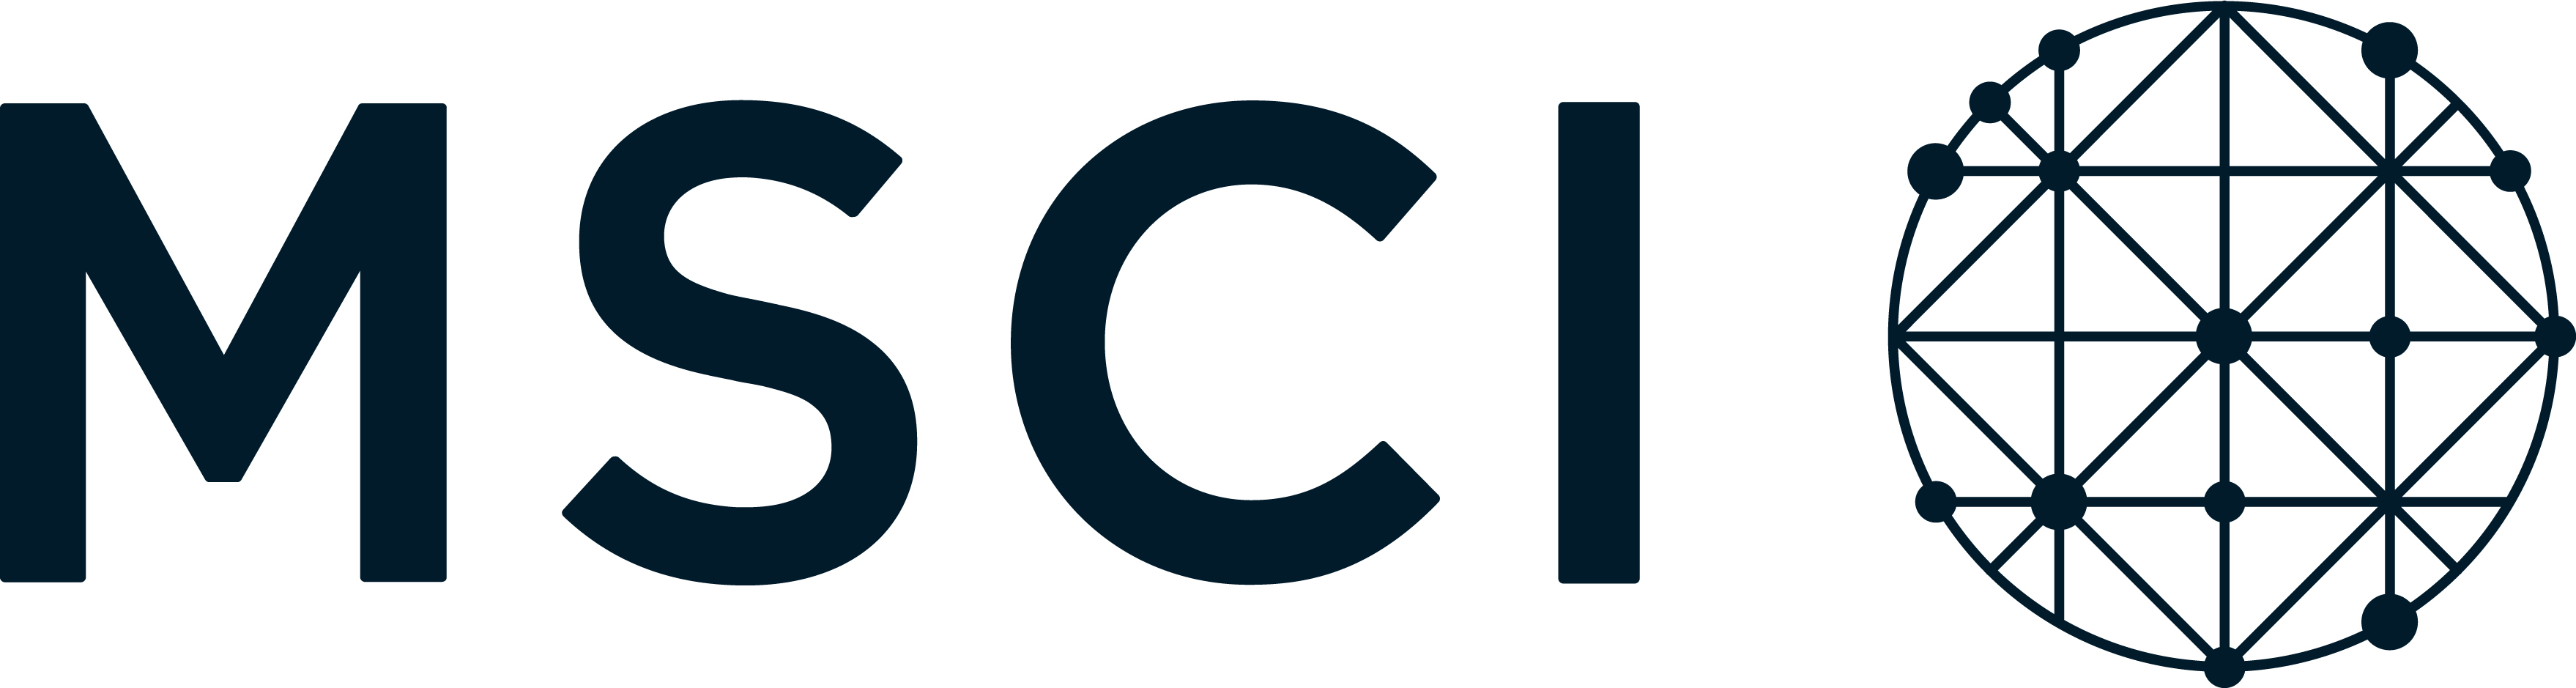 MSCI_logo_2019.jpg